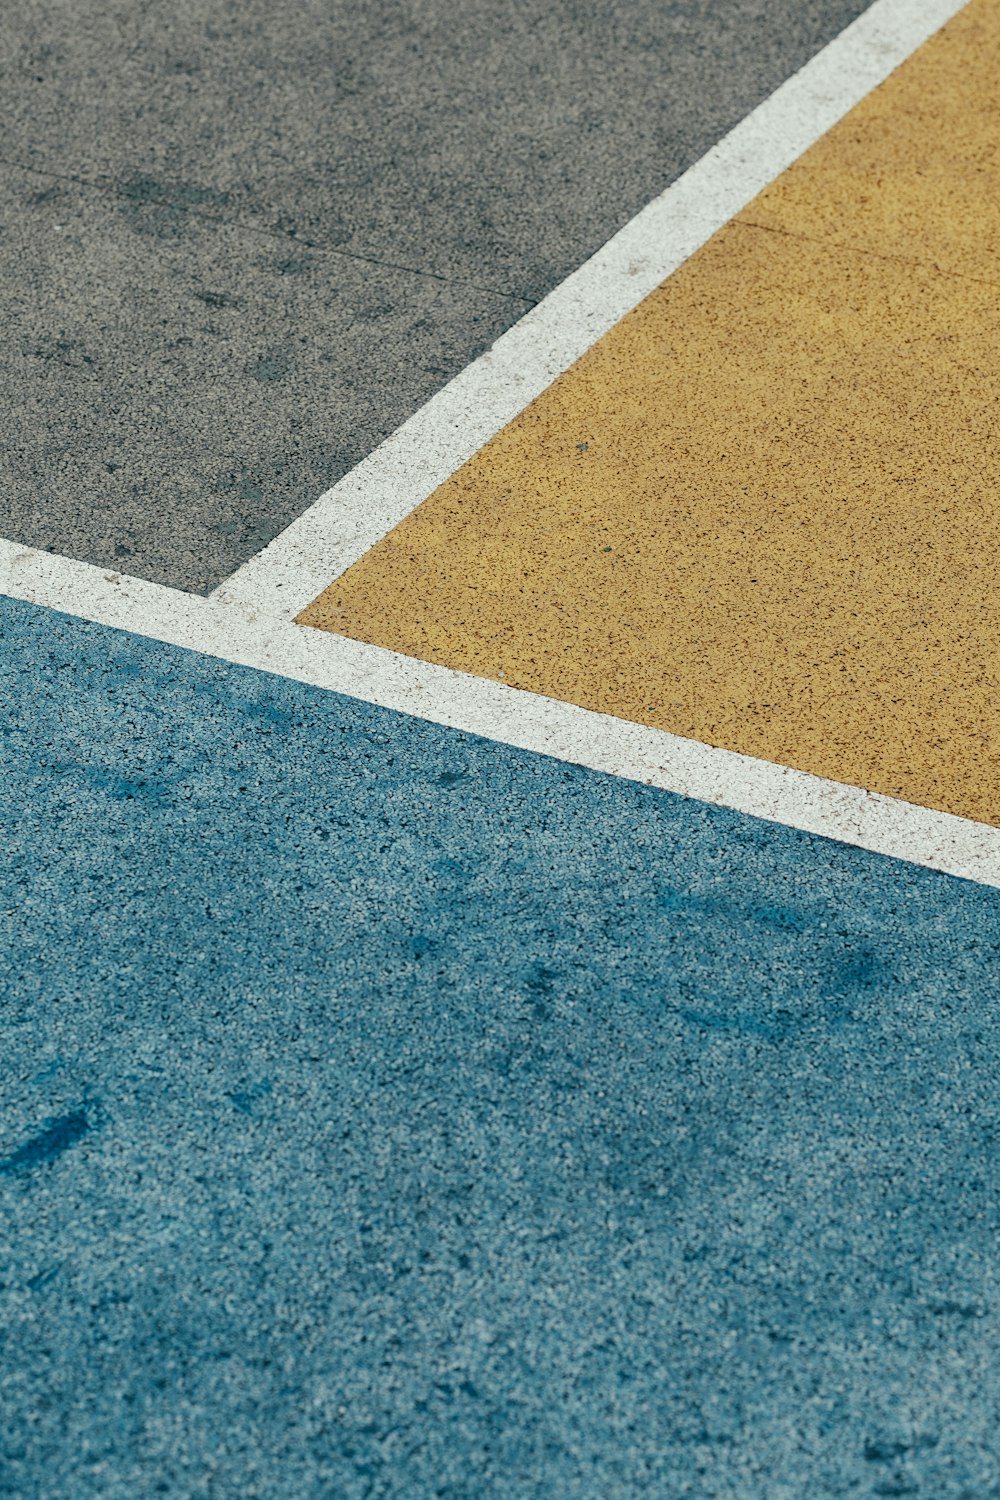 primo piano grigio, giallo, e blu dipinto pavimentazione